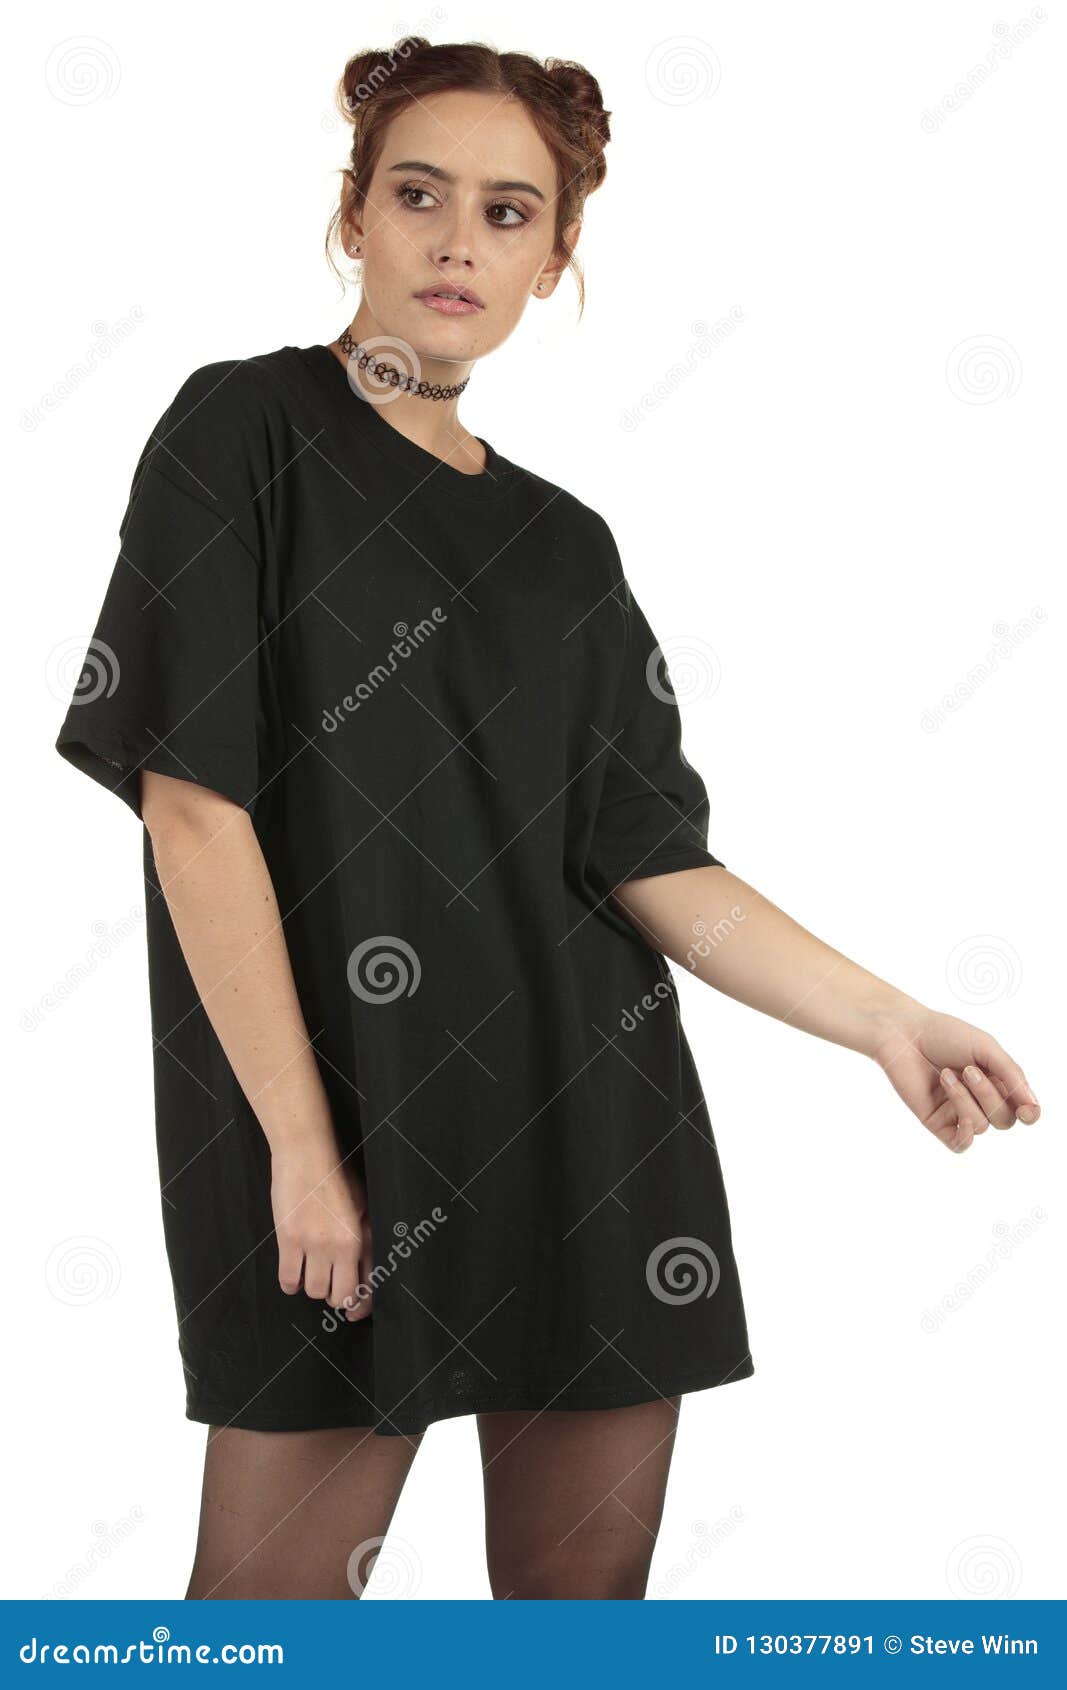 oversized black t shirt women's